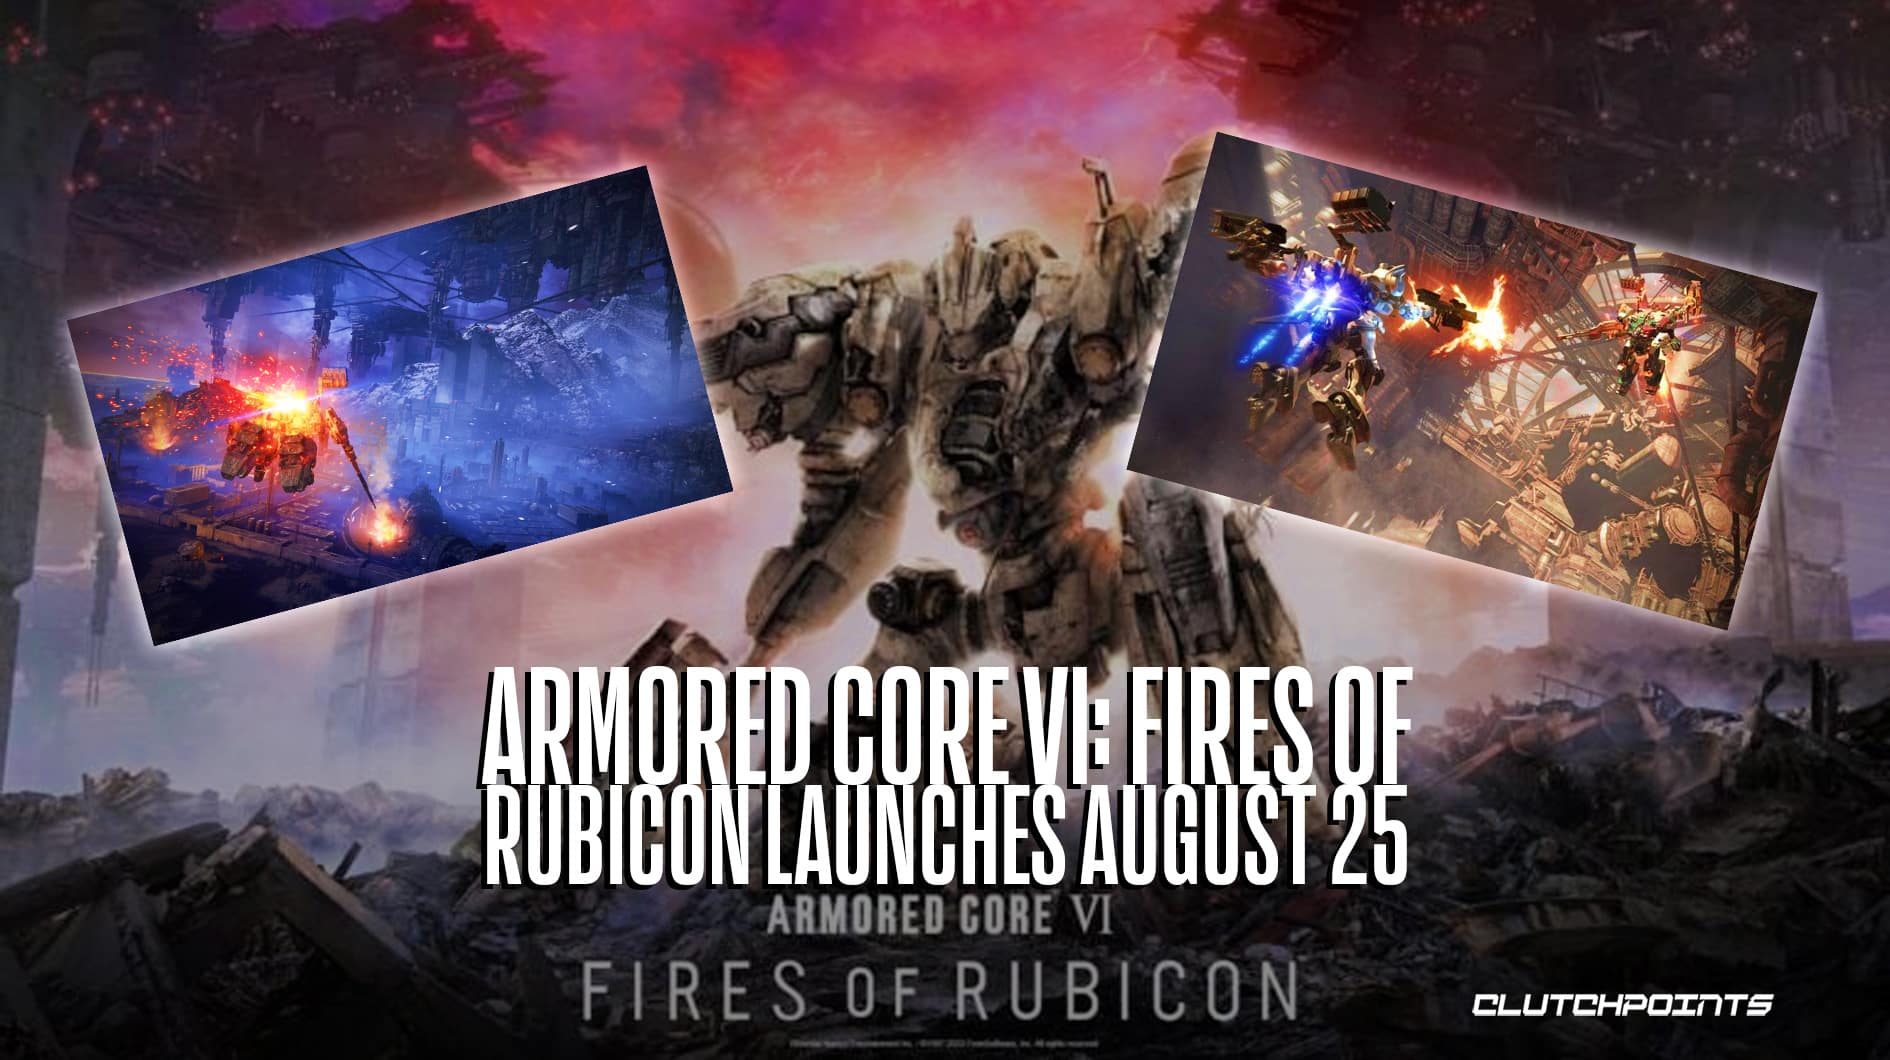 Armored Core VI Fires of Rubicon - Launch Trailer